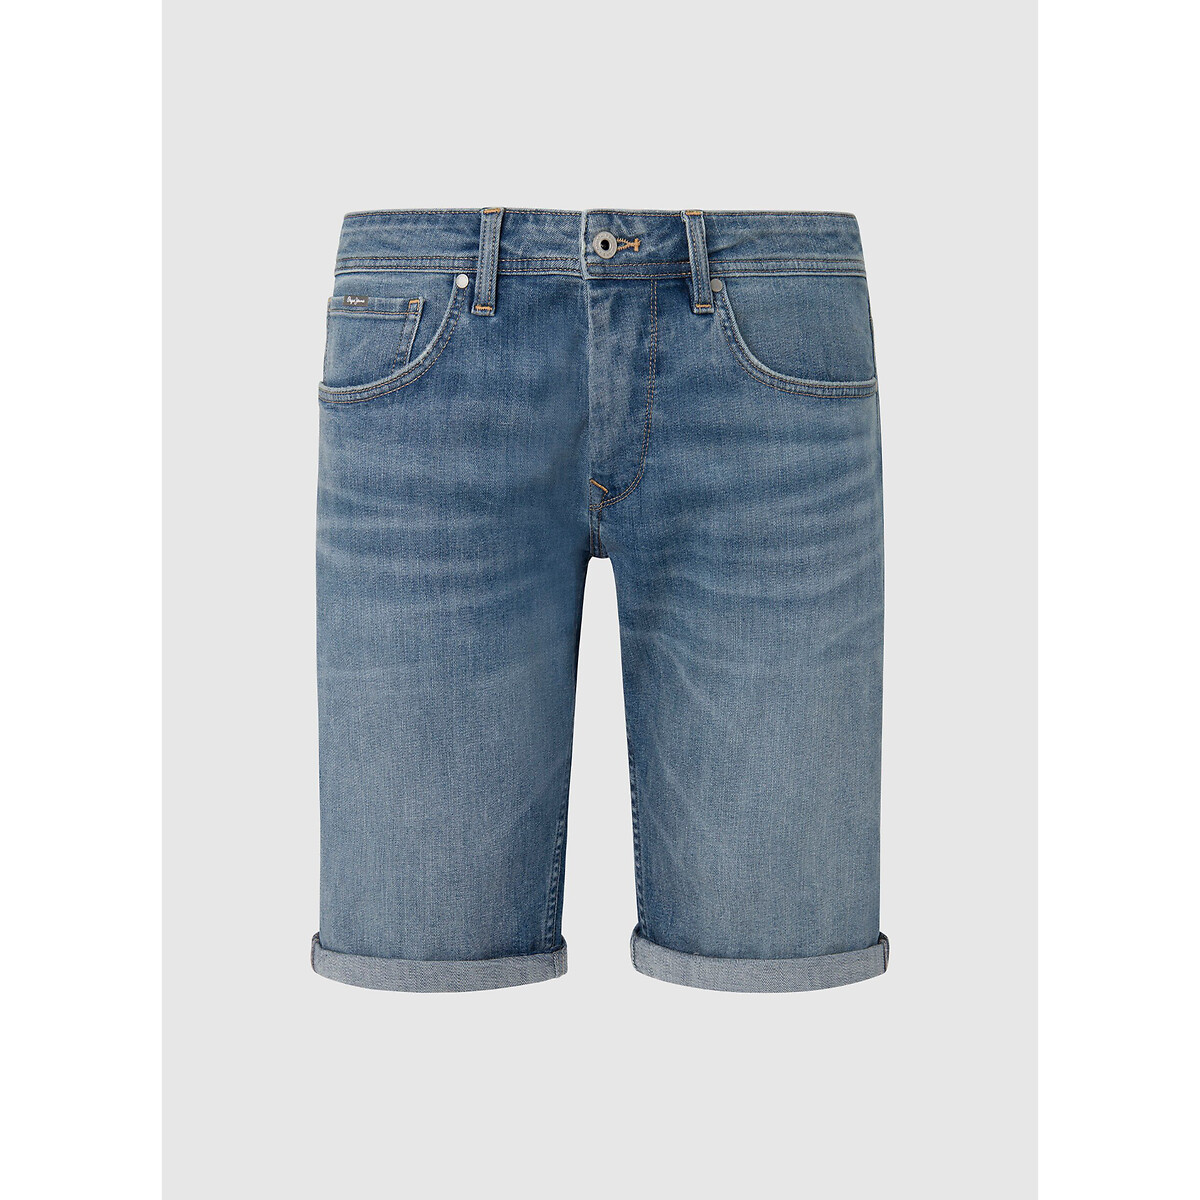 Шорты из джинсовой ткани прямого покроя 28 (US) синий куртка короткая прямого покроя из джинсовой ткани l синий